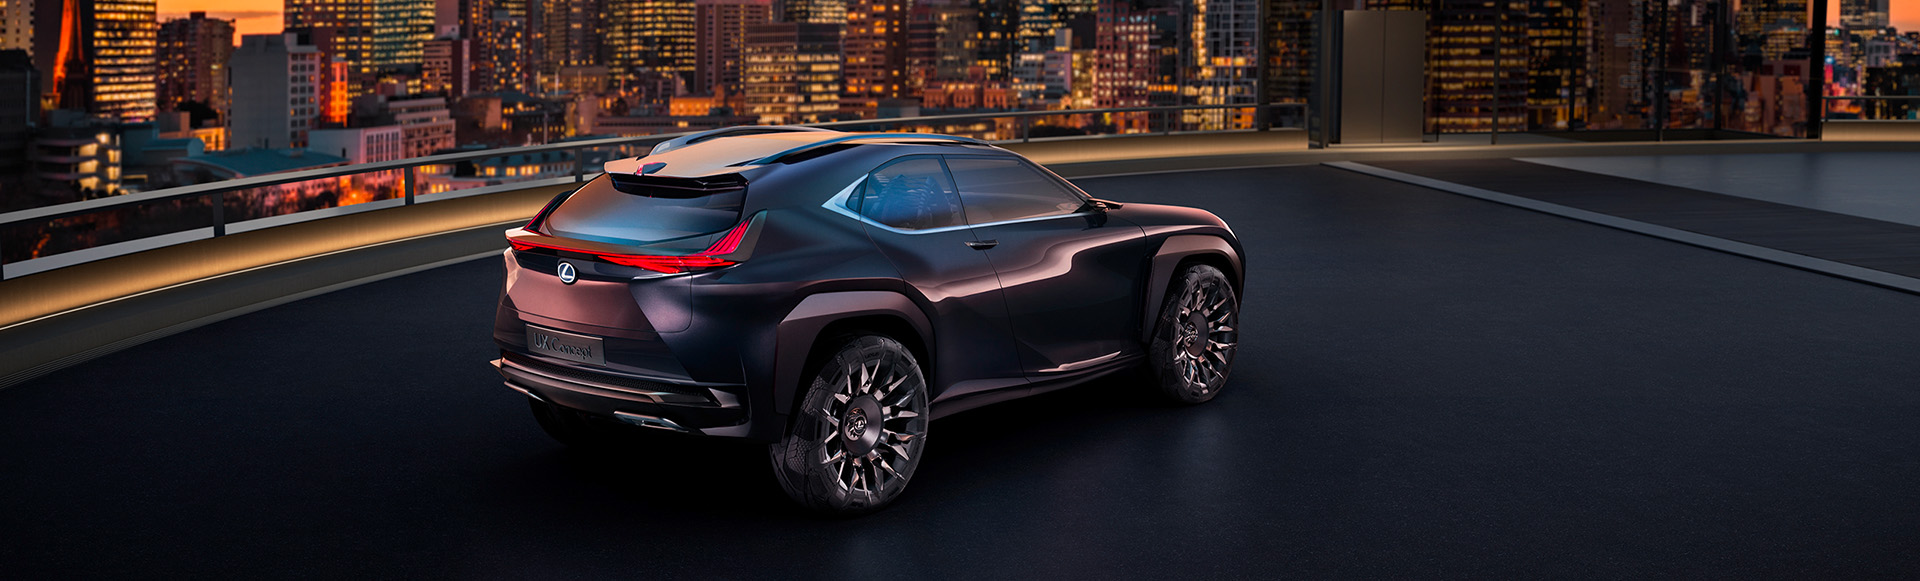 World Premiere of Lexus UX Concept